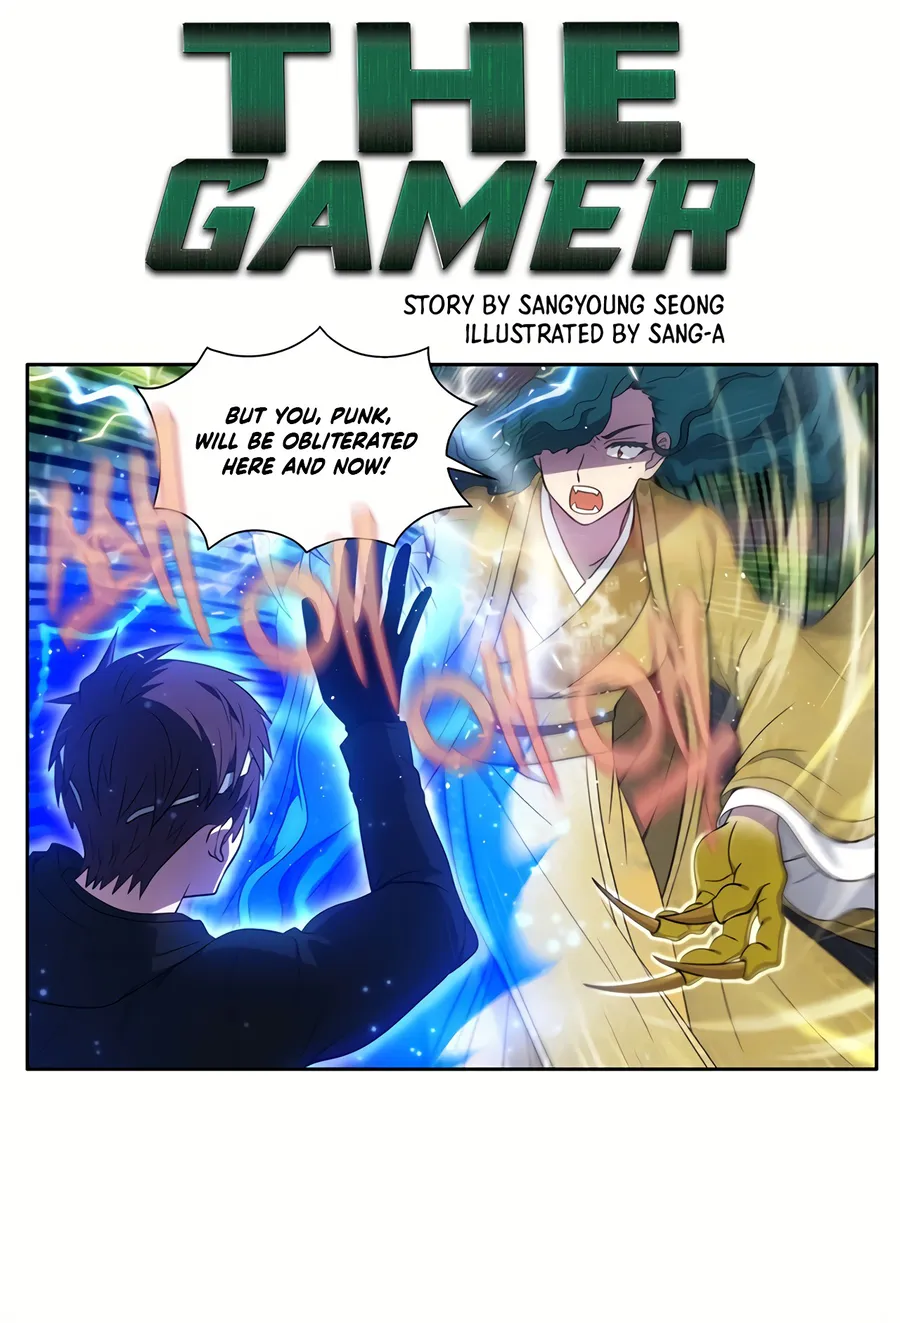 The Gamer, Chapter 420 - The Gamer Manga Online